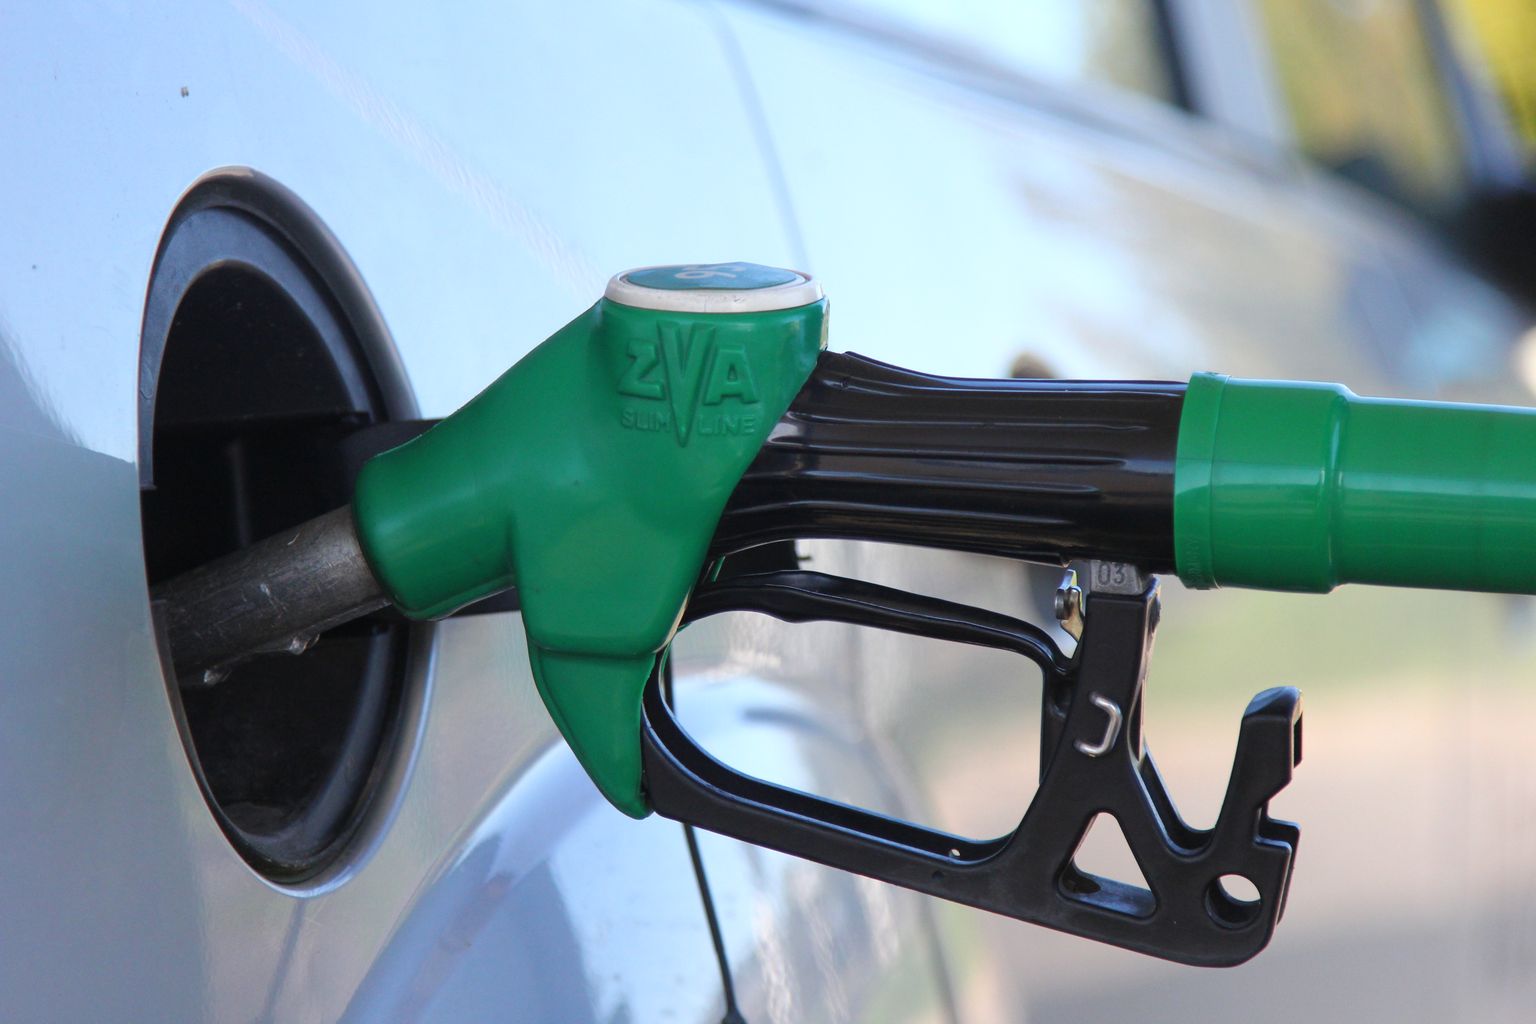 Belokrõlovi ettevõte müüs kütust Eesti suurtele kütusefirmadele, kuid jättis käibemaksu tasumata.